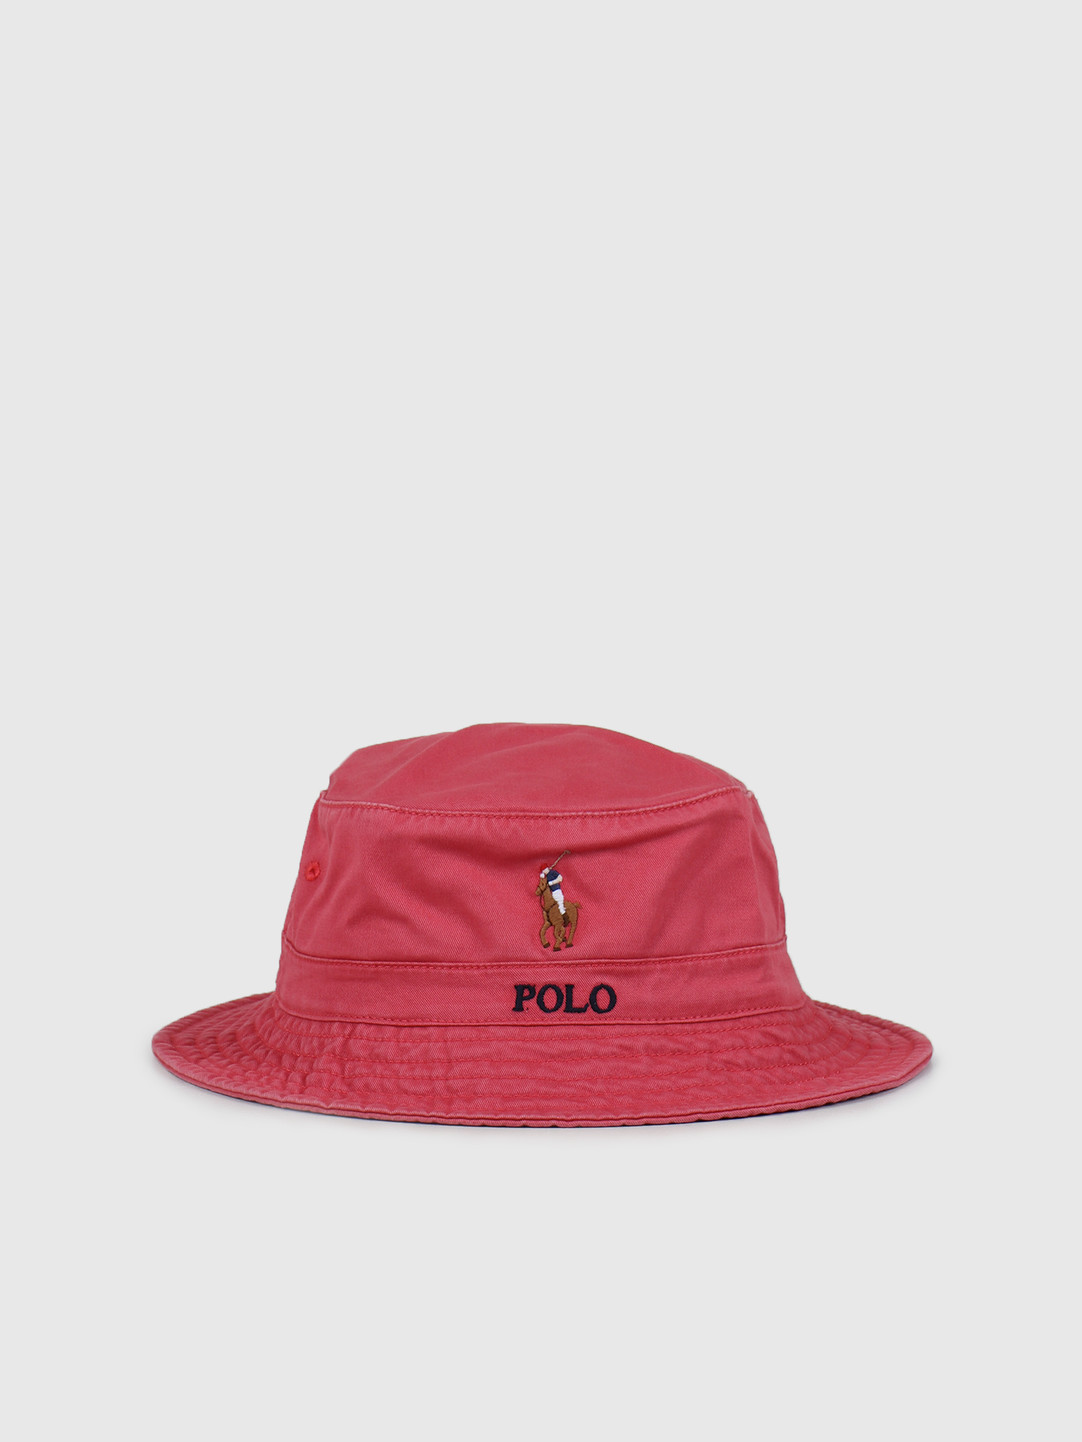 polo beach hat